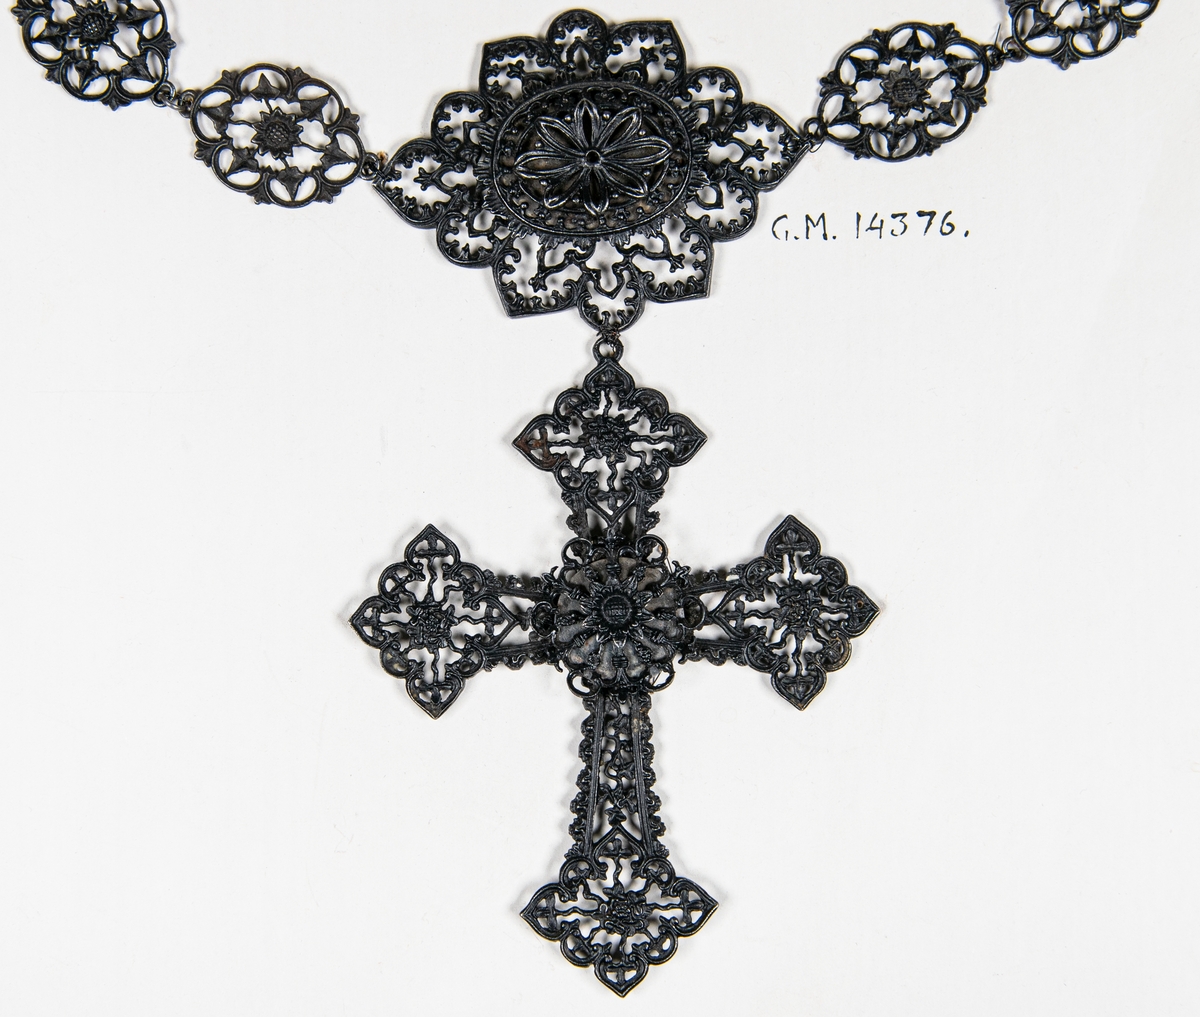 Smycke, halsband av metall, gjutet, genombrutna plattor, i mitten en större varvid ett kors är fastsatt. Lås: två händer som fattar varandra.